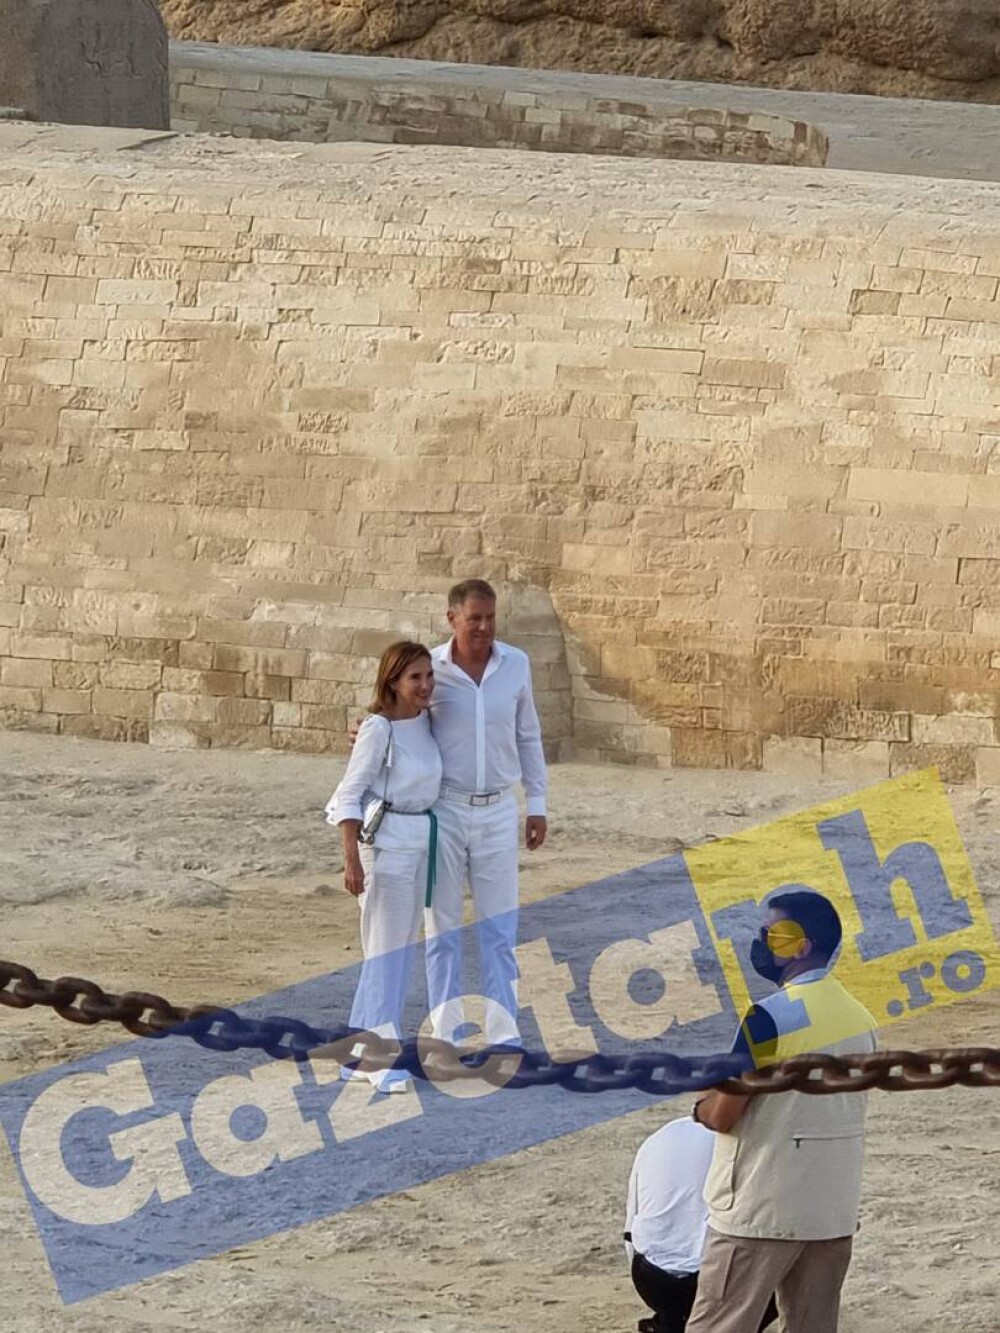 Klaus Iohannis și soția sa, în vizită la piramide în Egipt. FOTO - Imaginea 1